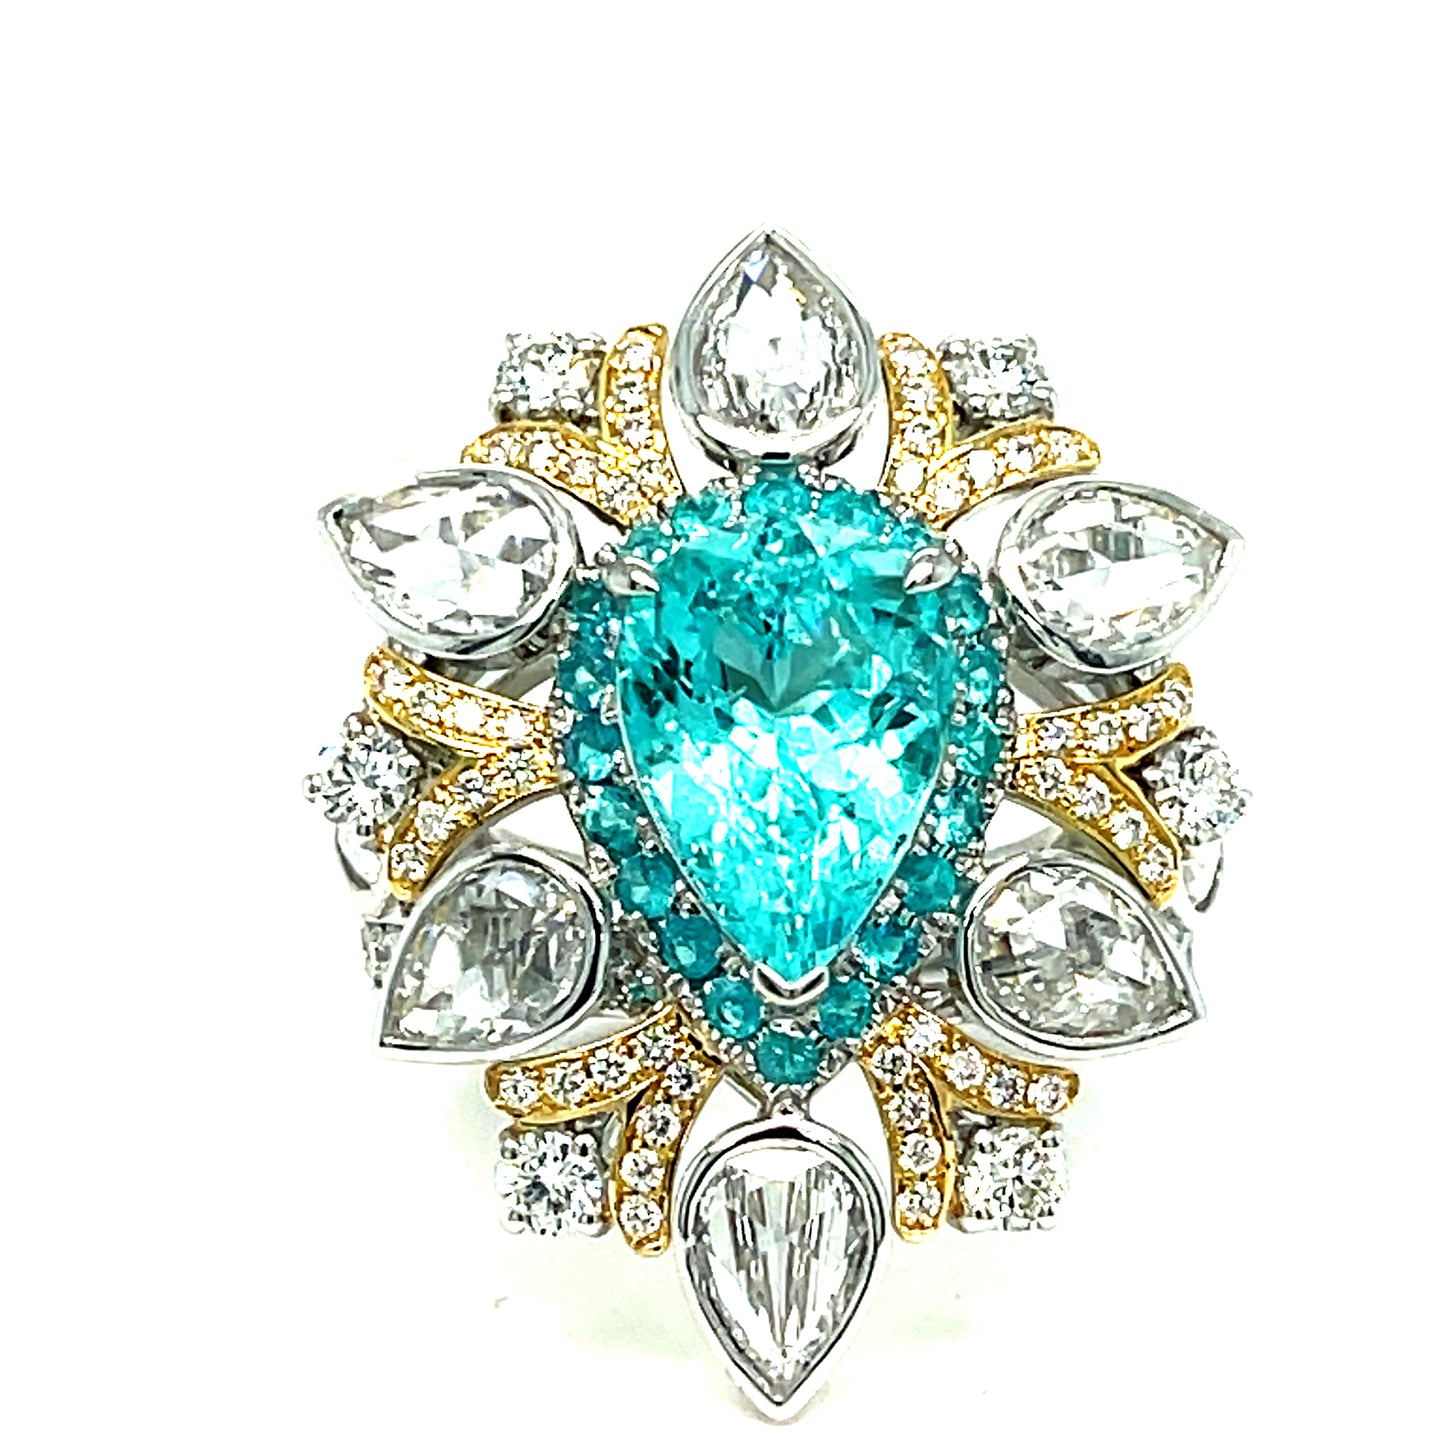 Paraiba Diamond Engagement Ring in Platinum please inquire about price